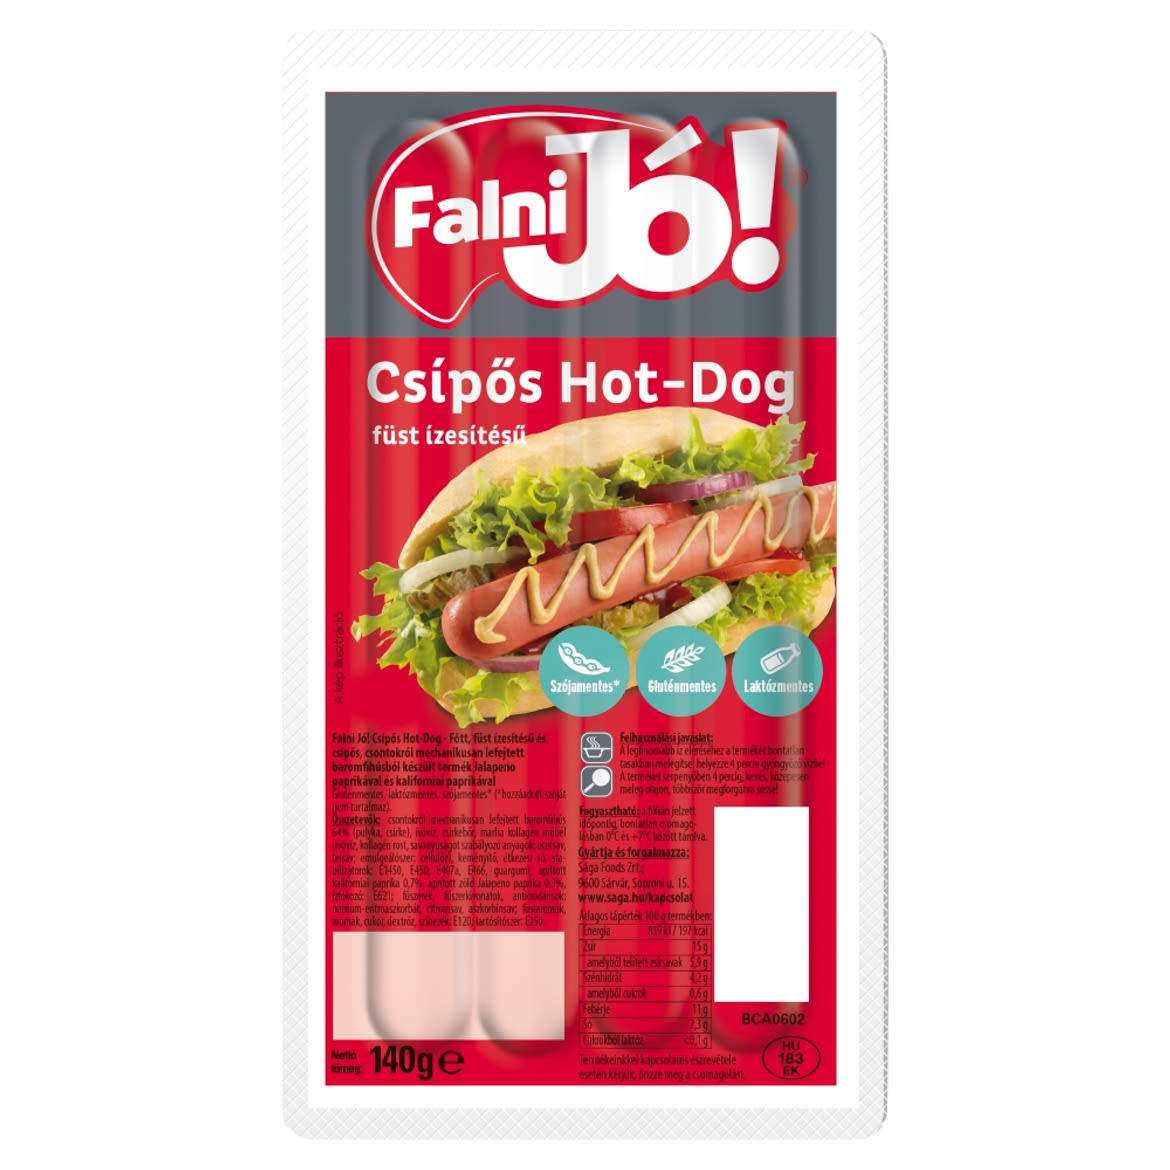 Falni Jó! füst ízesítésű csípős hot-dog